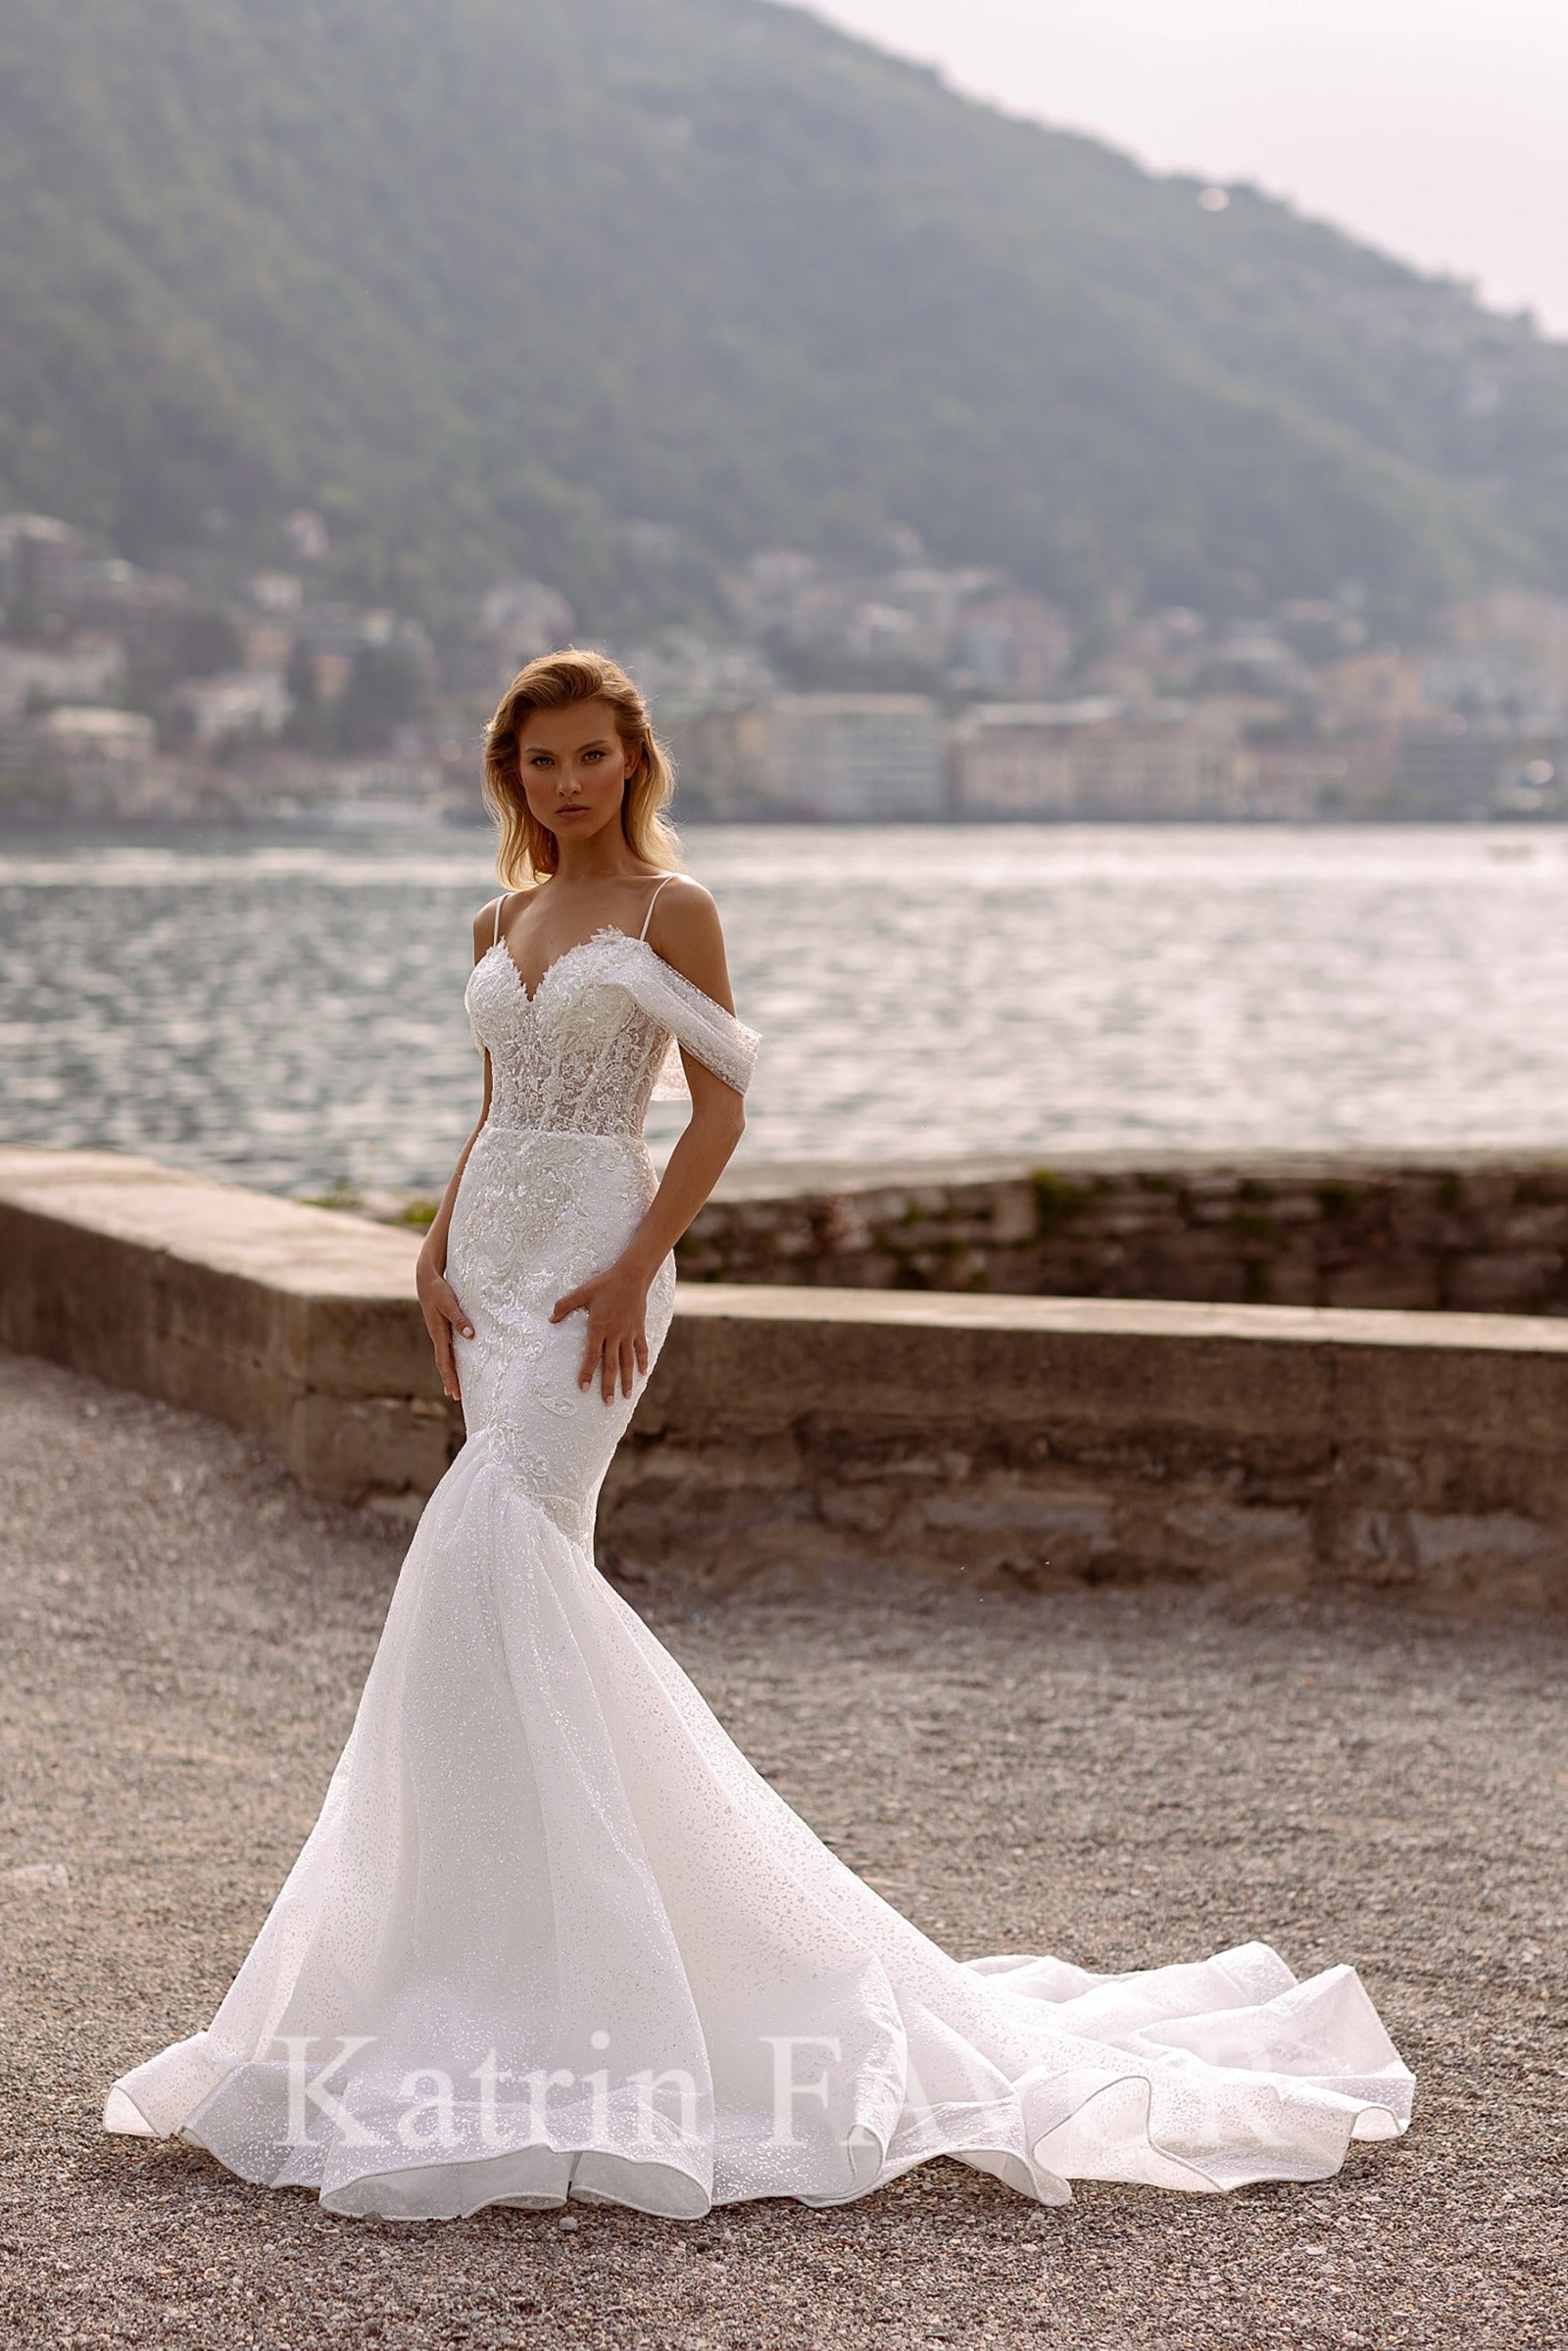 KatrinFAVORboutique-Sparkle off the shoulder mermaid wedding dress